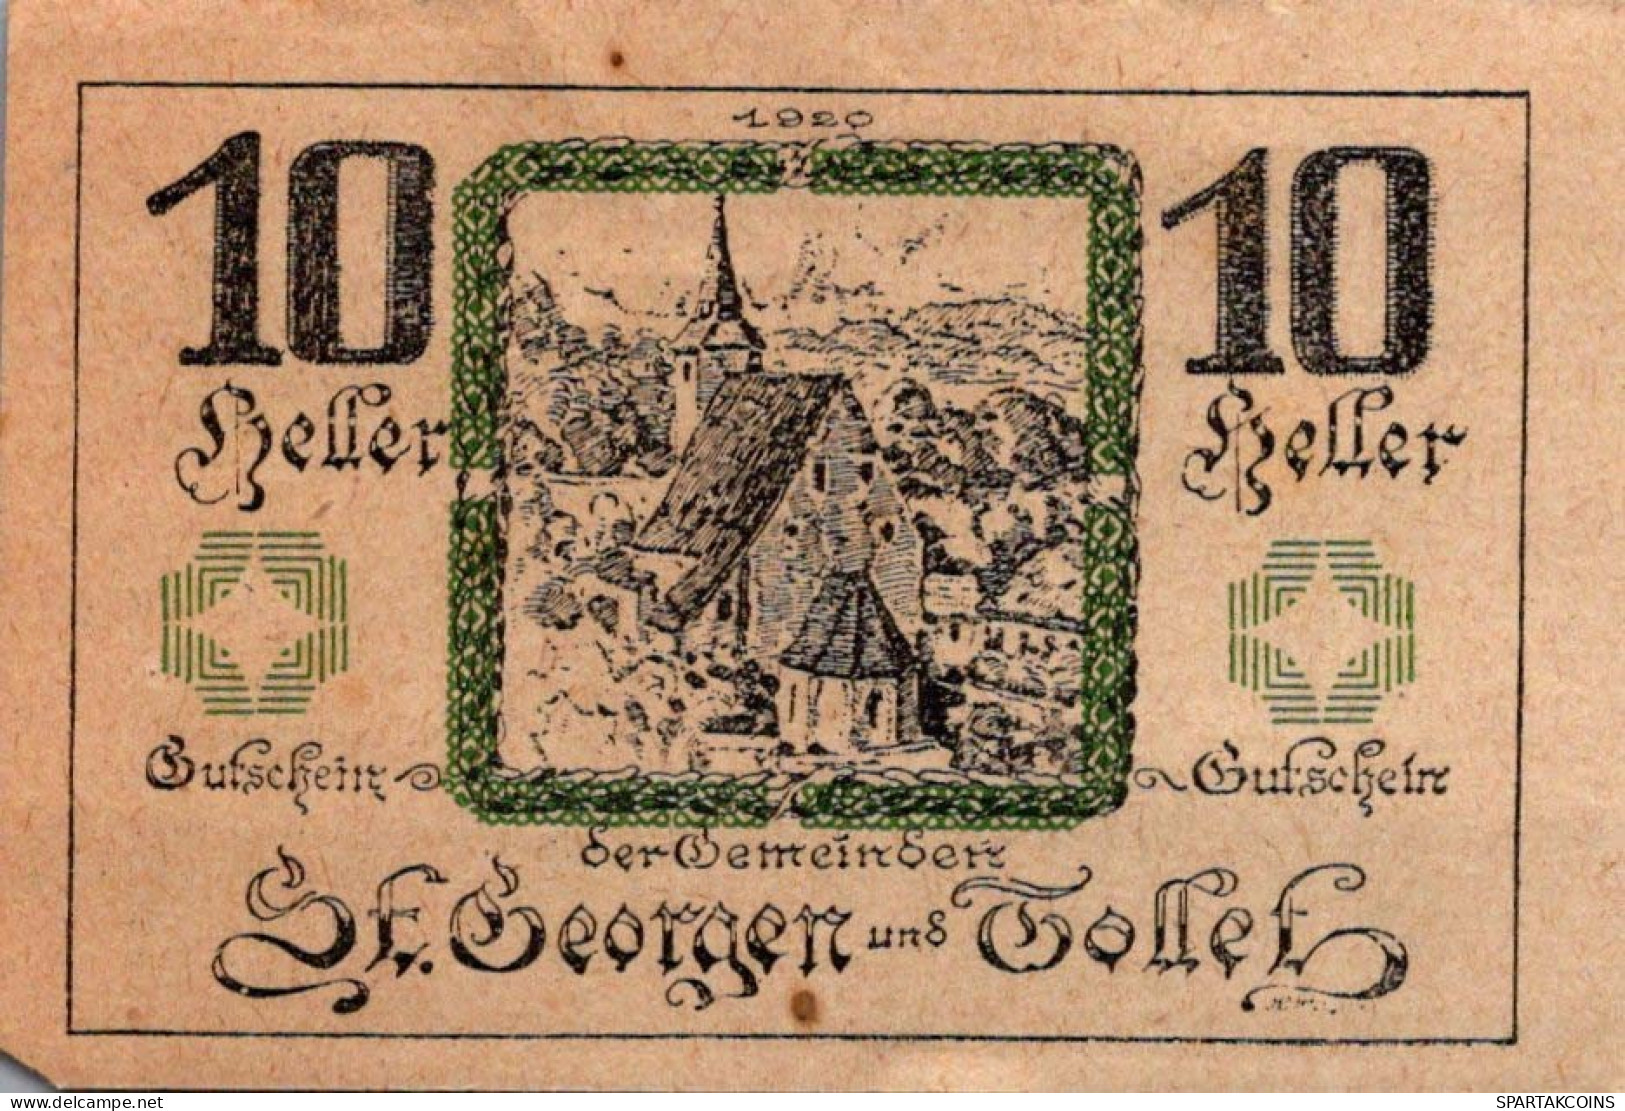 10 HELLER 1921 SANKT GEORGEN BEI GRIESKIRCHEN AND TOLLET Oberösterreich Österreich #PF013 - Lokale Ausgaben